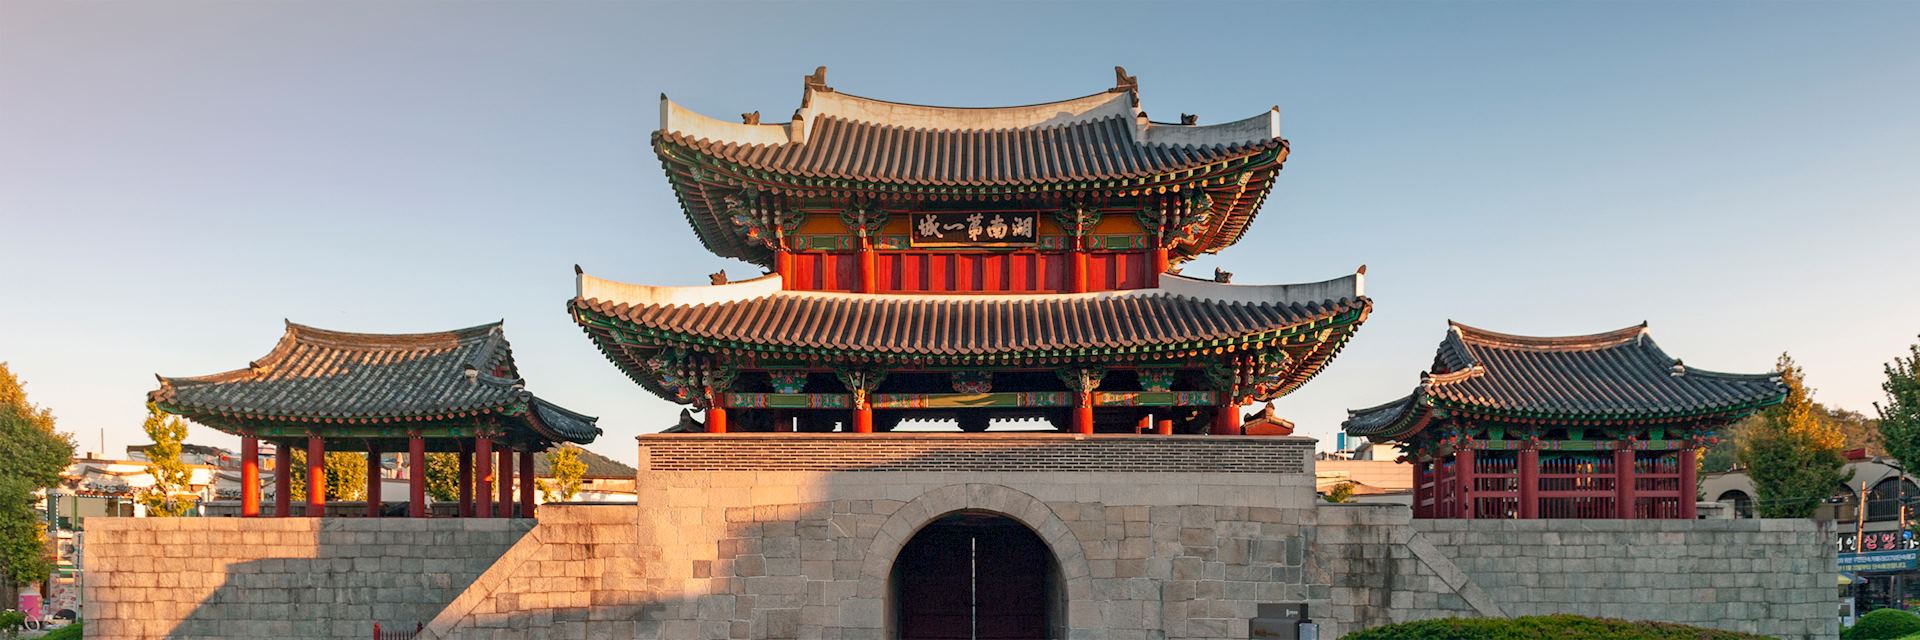 Pungnammu Gate, Jeonju